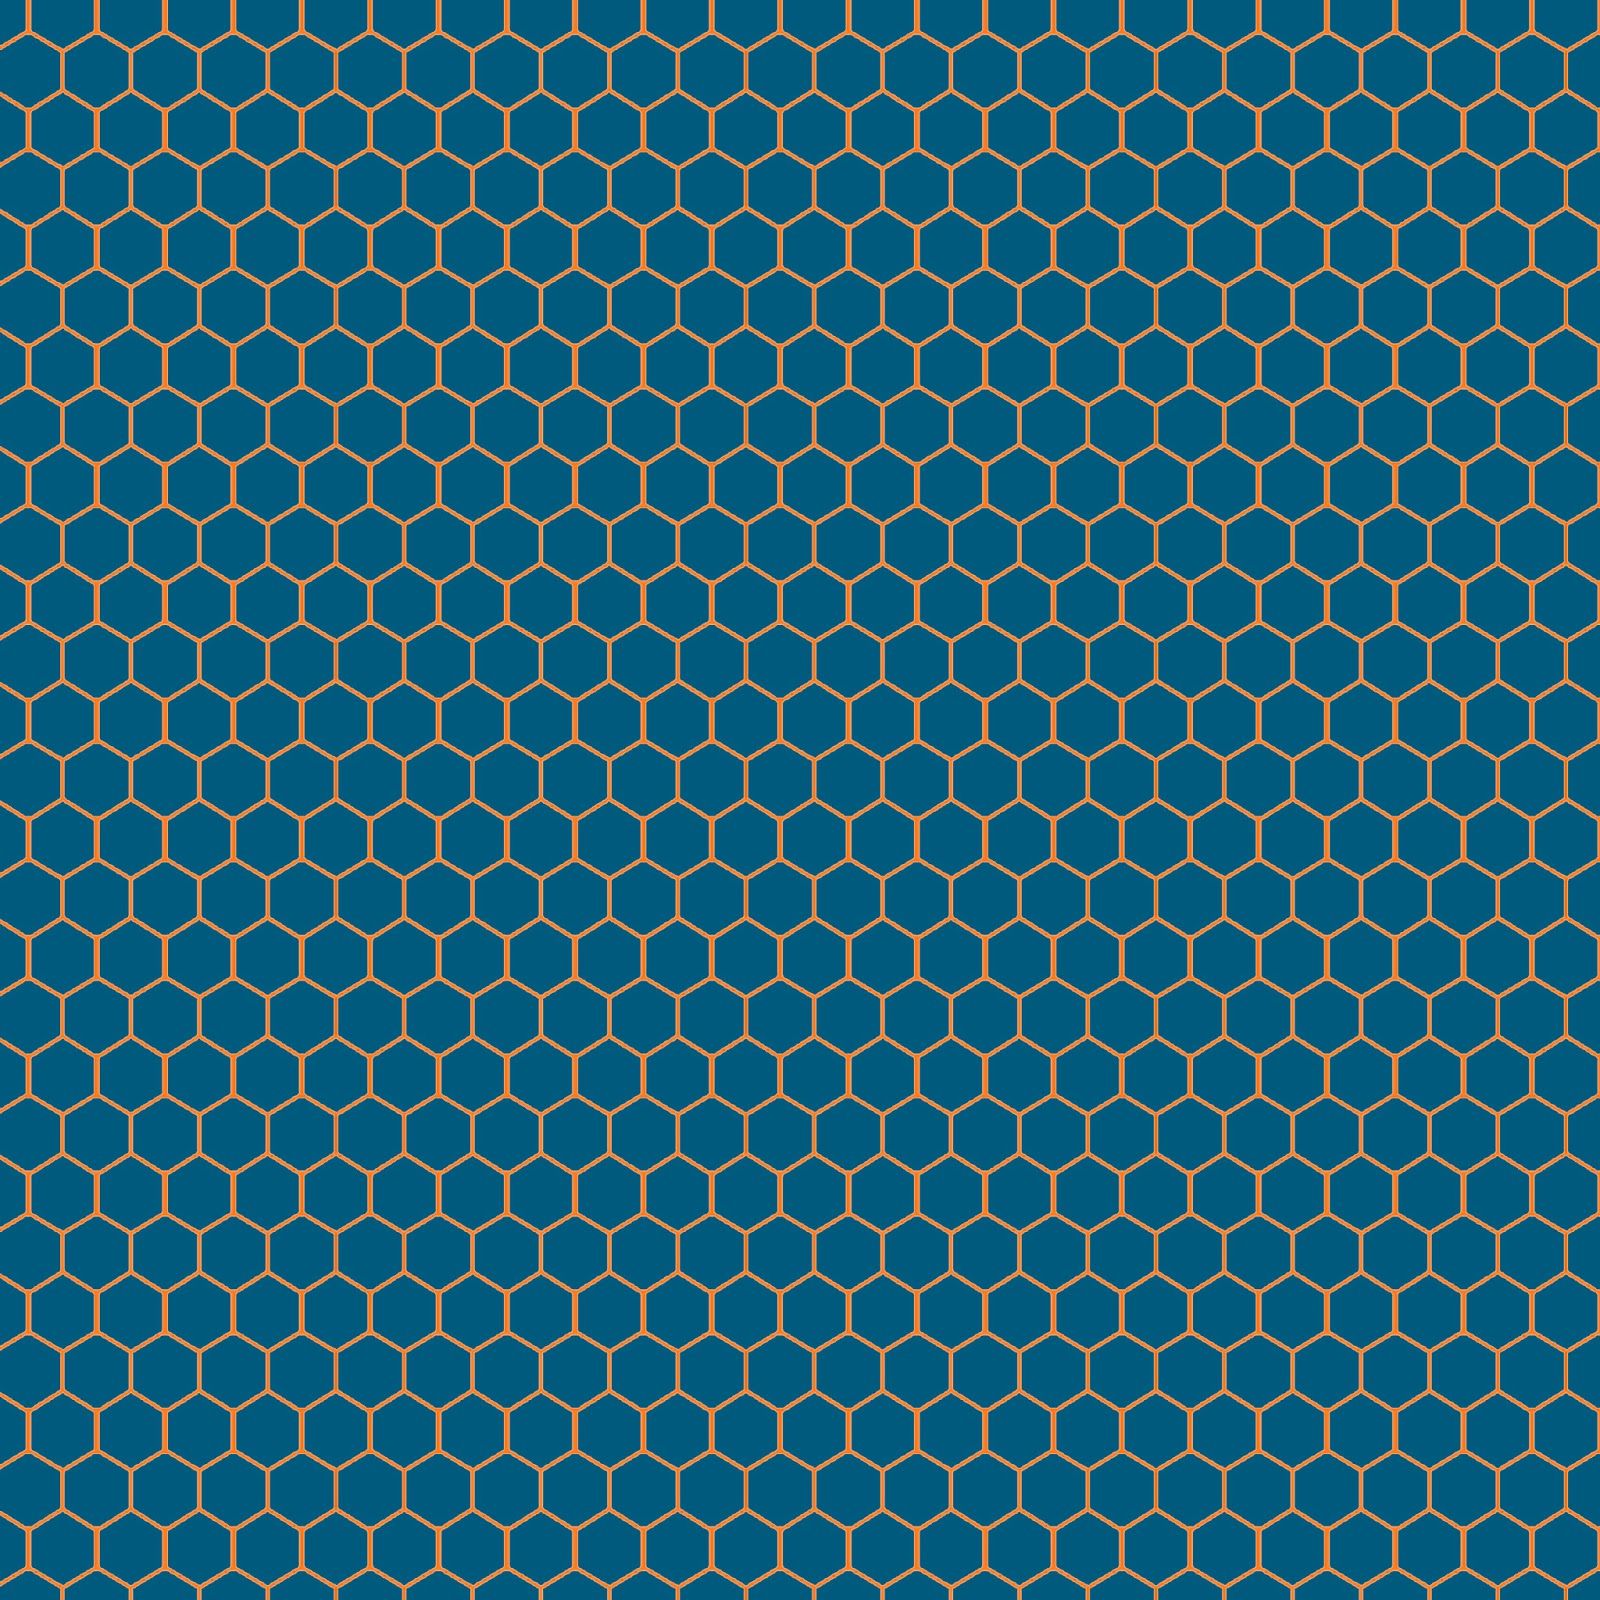 Blue honeycomb pattern wallpaper. Wallpaper Wide HD. Background patterns, Hexagon wallpaper, Hexagon pattern